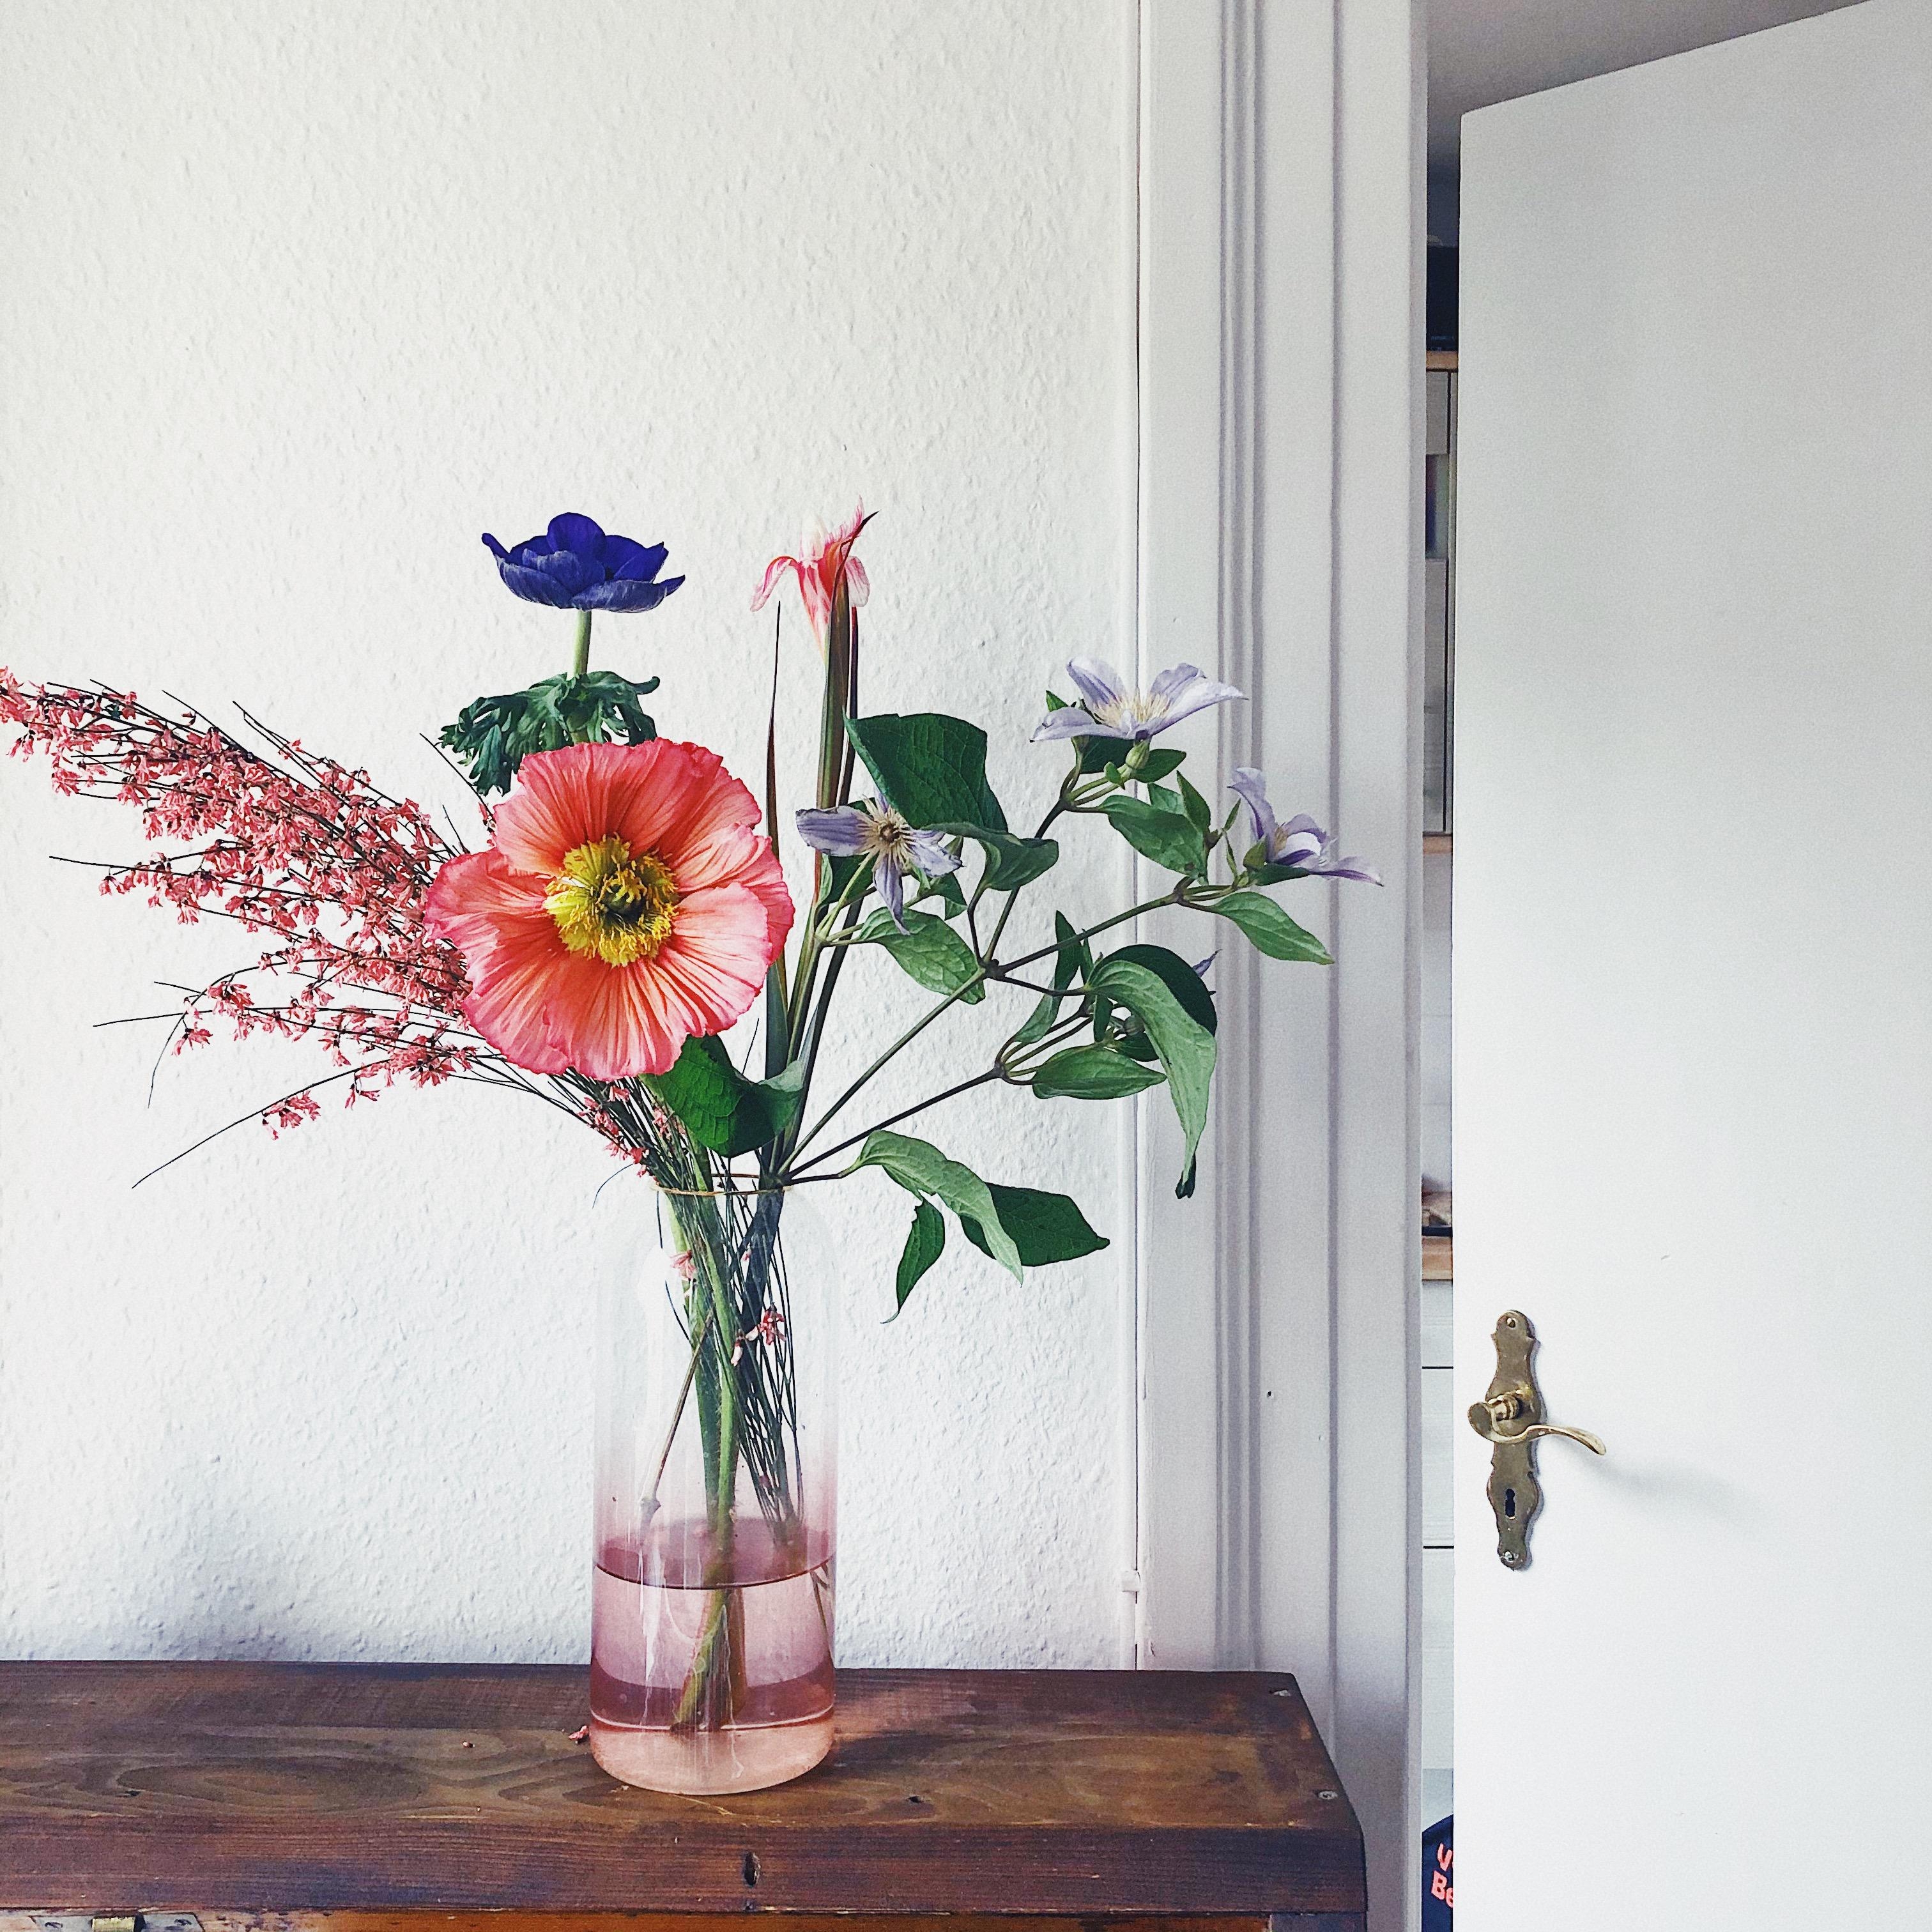 Wenn die perfekte Bumenkombi in die Lieblingsvase wandert... 💕
#flowers #Blumen #Blumenliebe #freshflowerfriday #Vase